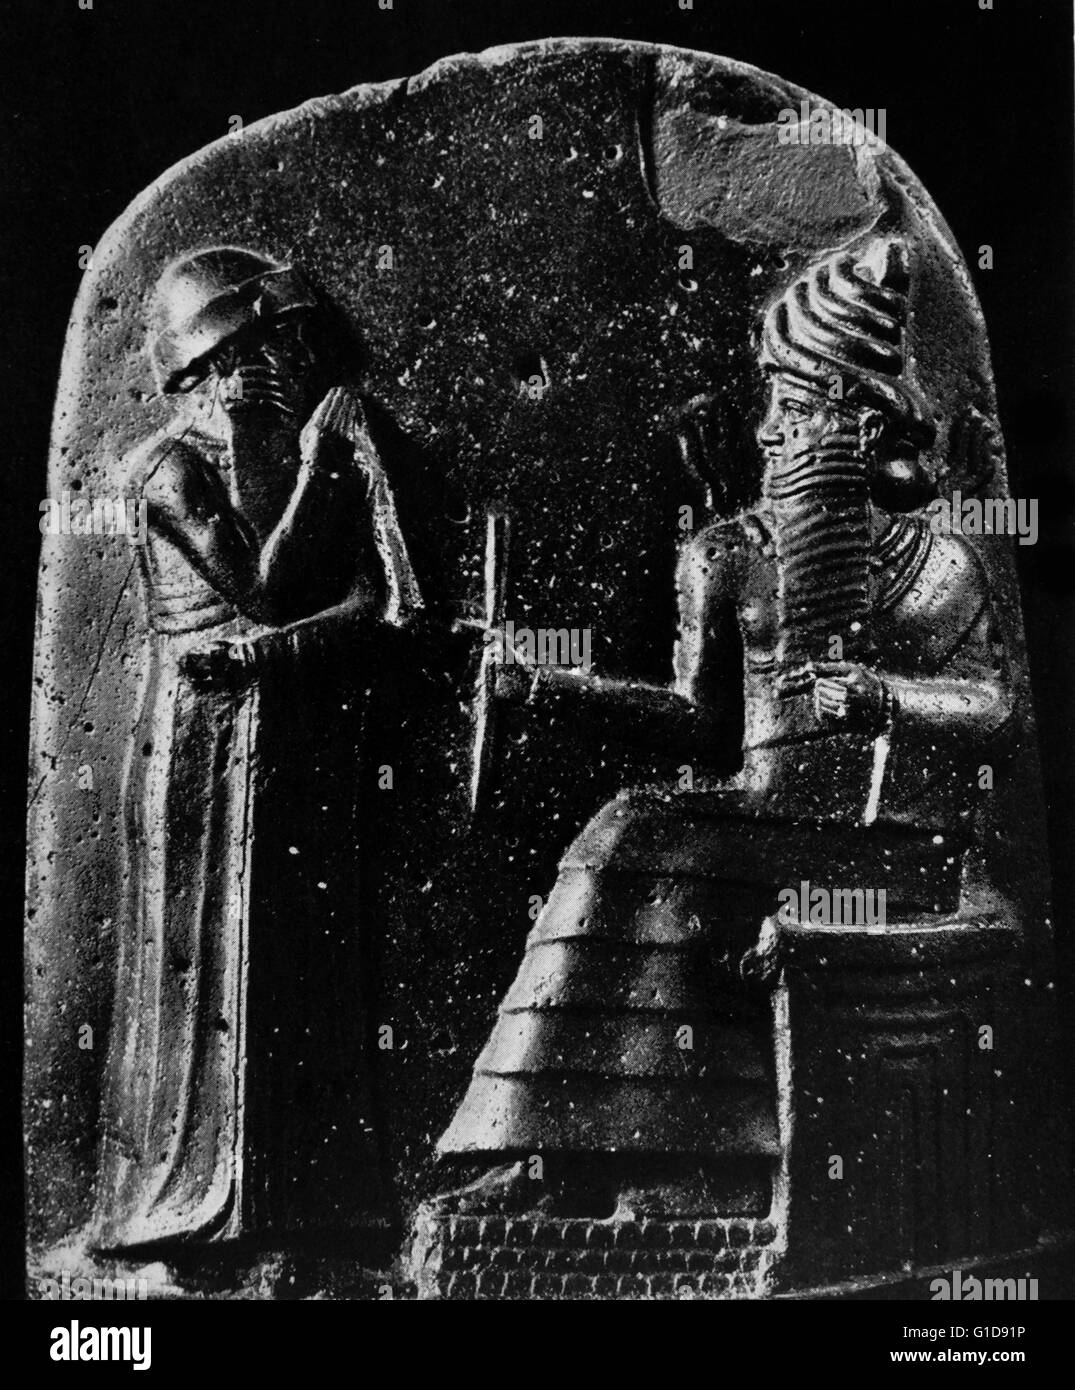 Dettagli dalla stele di Hammurabi che mostra il re ricevere insegne regali da Shamash. Hammurabi è stato il sesto re della prima dinastia babilonese. Datato 1792-1750 A.C. Foto Stock